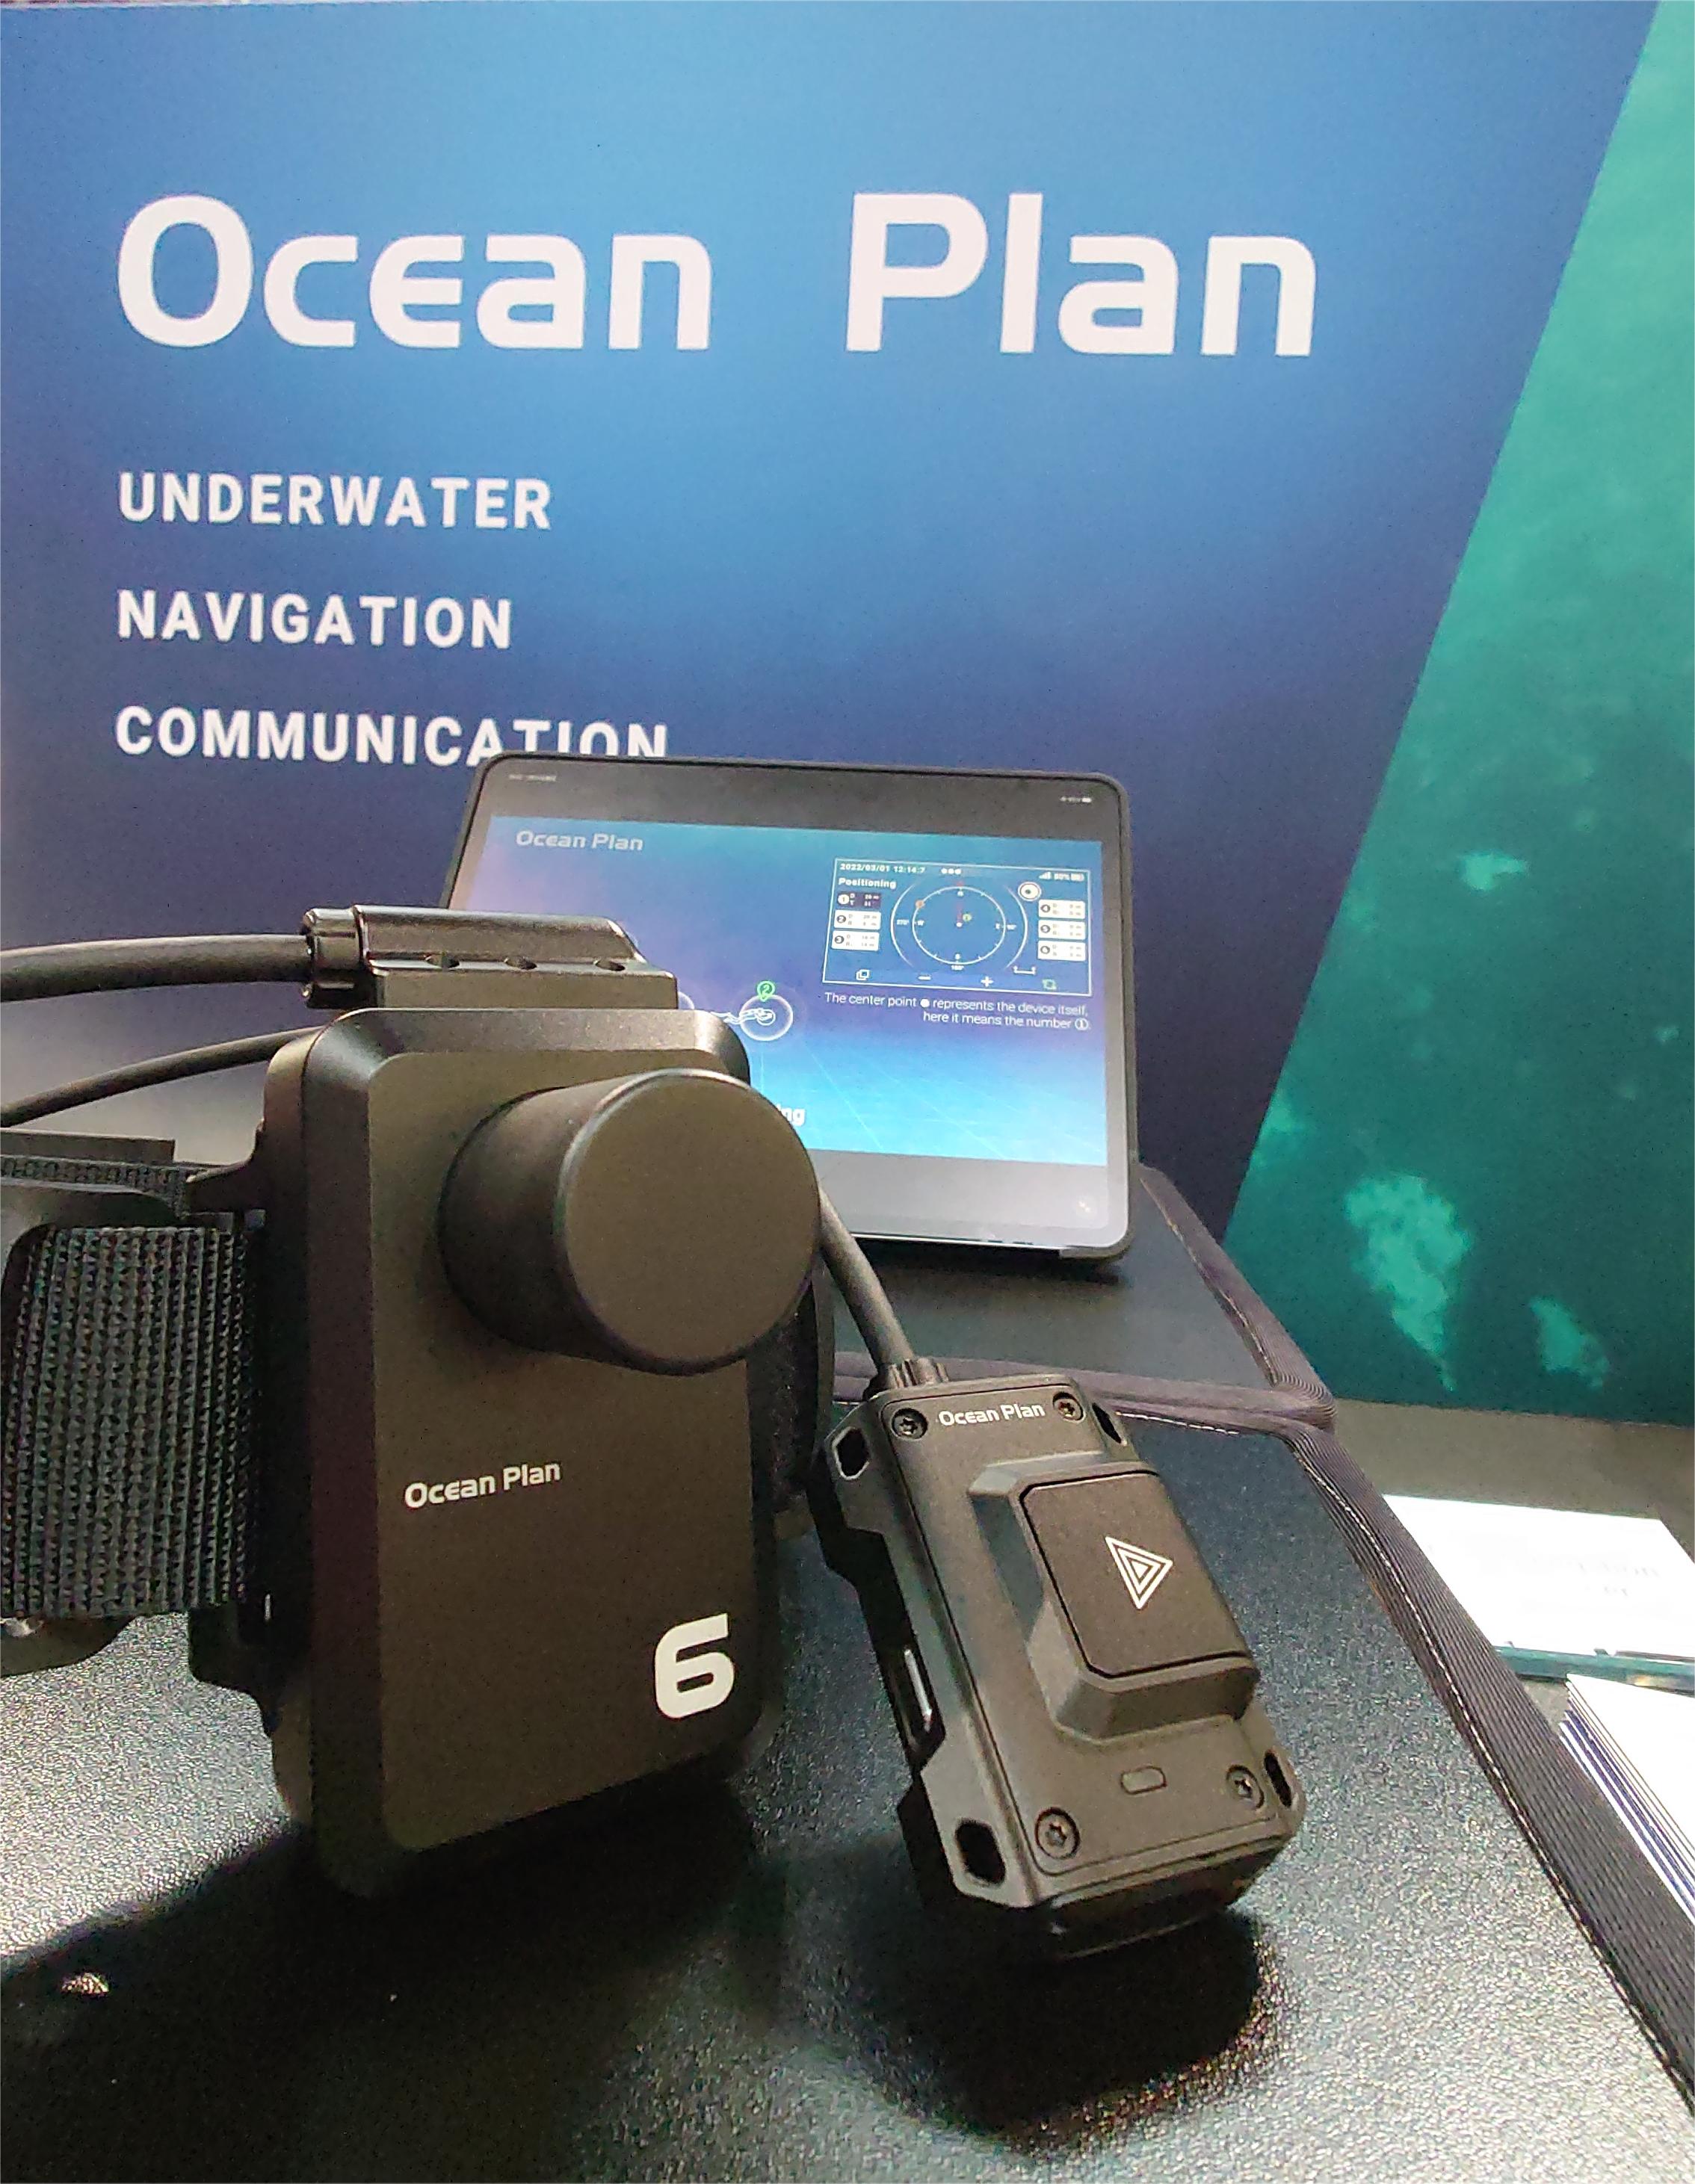 新品发布—— “ 潜水员追踪器 ” 杜塞尔多夫船展首次展出